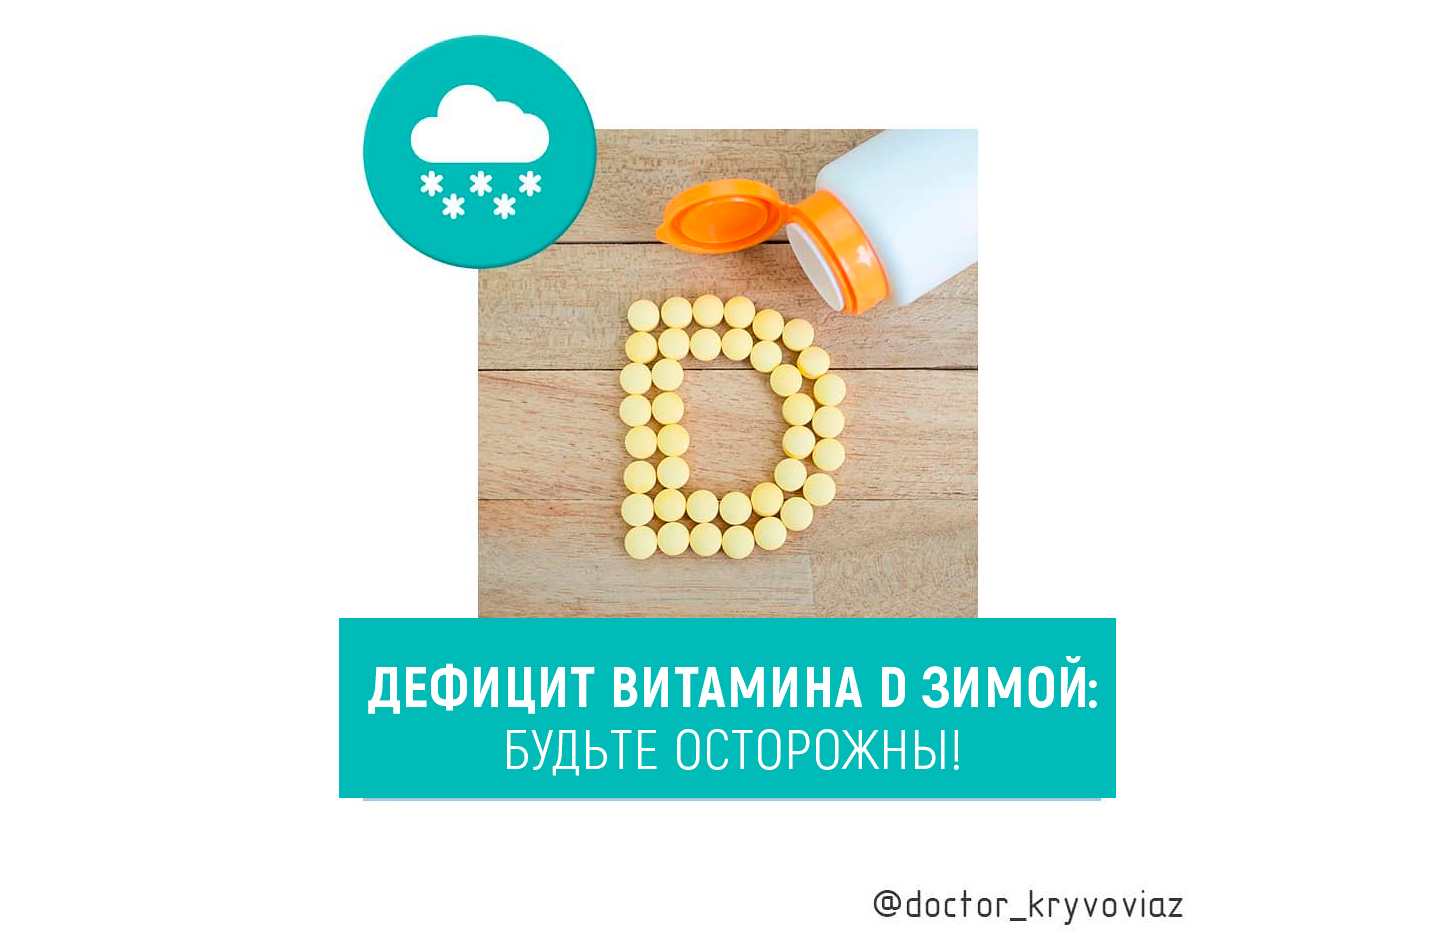 Дефицит витамина D зимой: будьте осторожны! - изображение